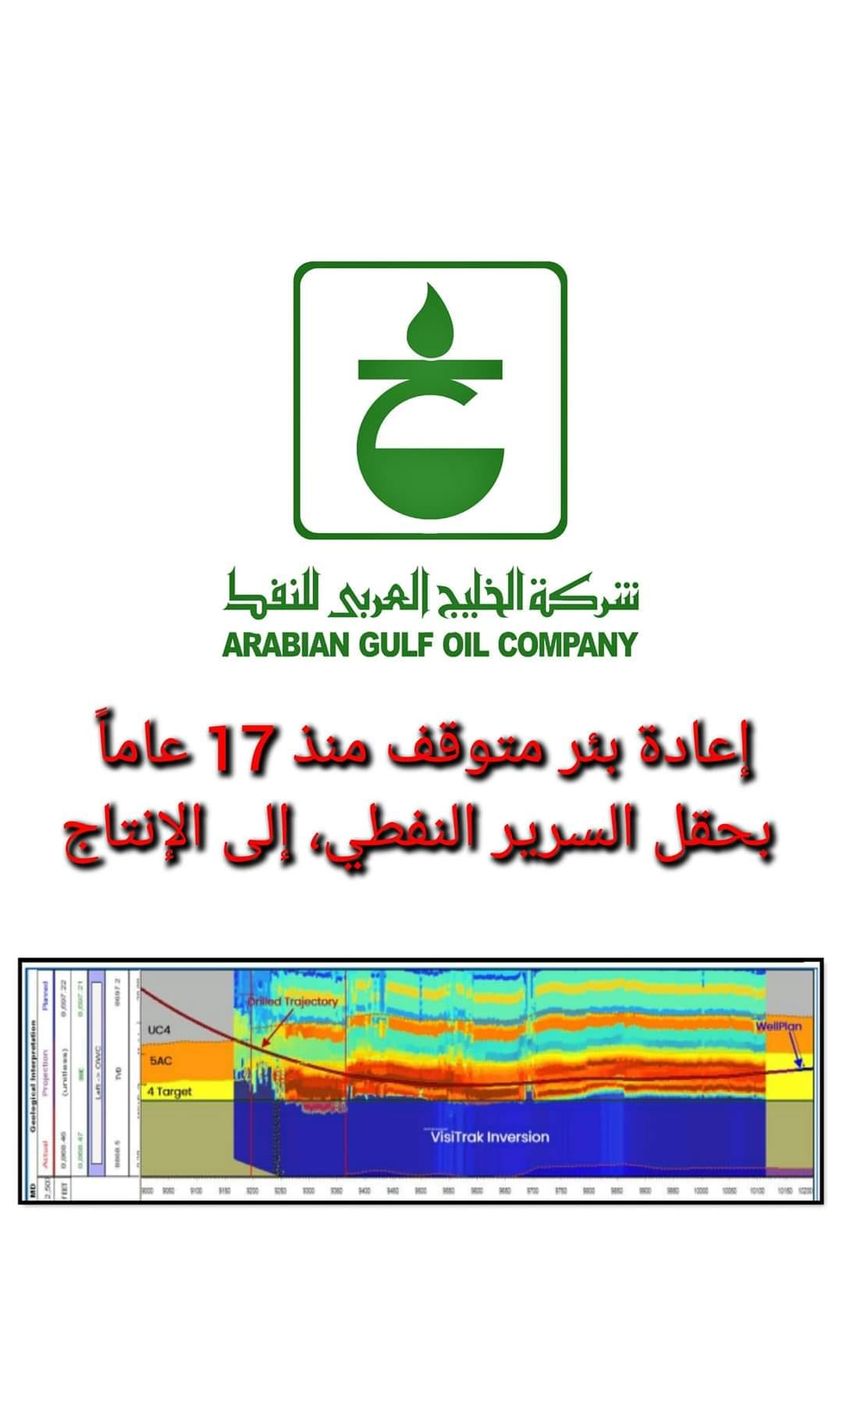  شركة الخليج العربي للنفط : دخول بئر (C309-65) بحقل السرير النفطي إلى الإنتاج .